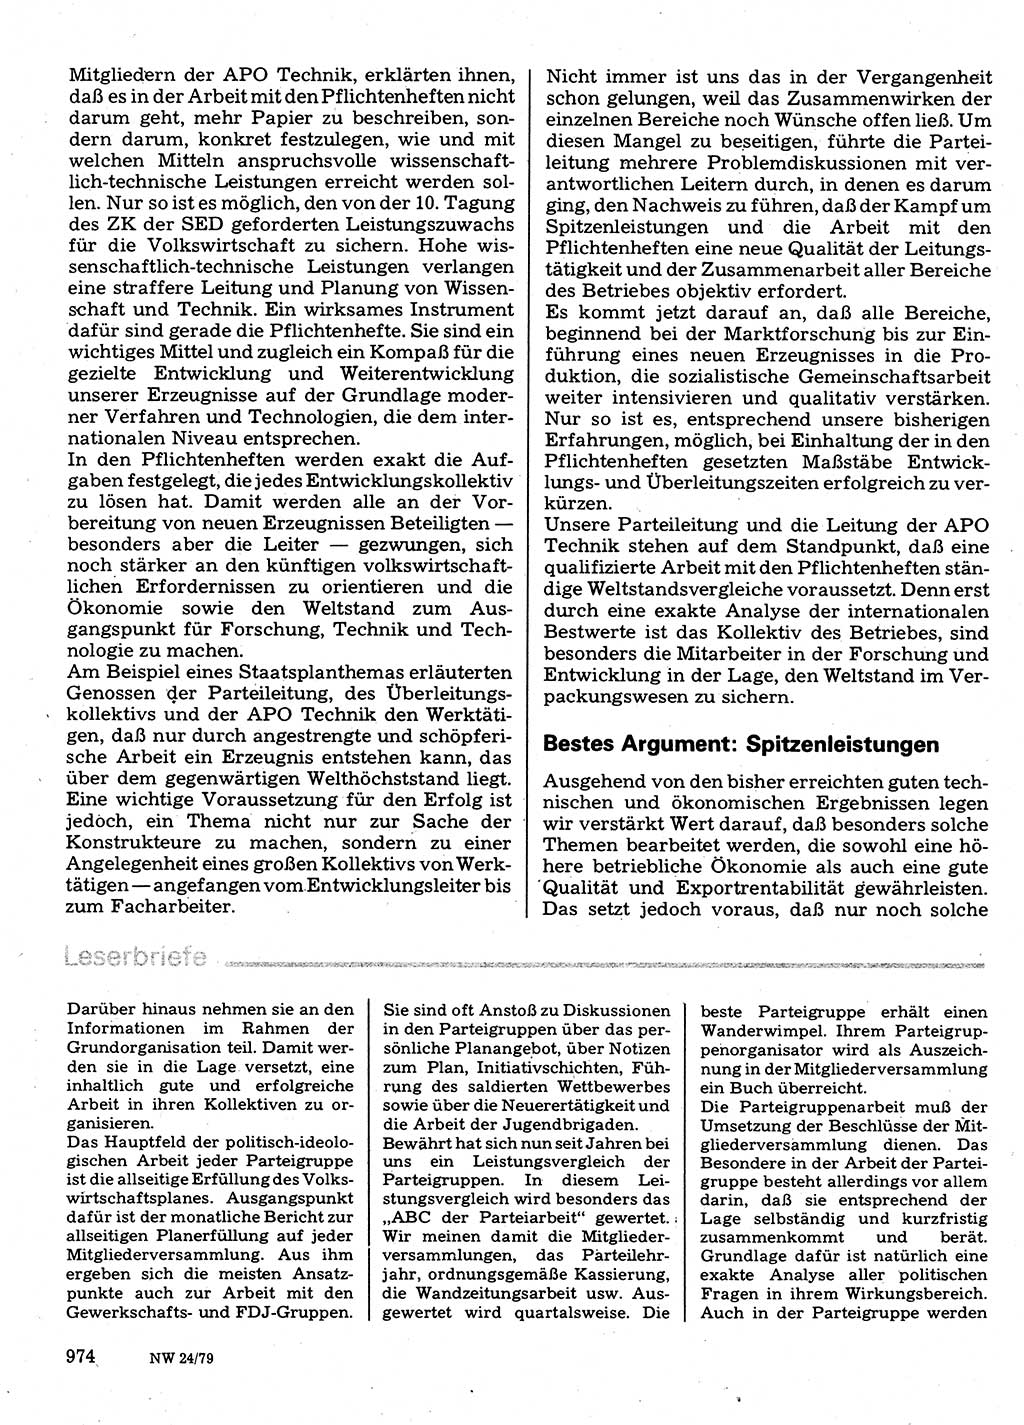 Neuer Weg (NW), Organ des Zentralkomitees (ZK) der SED (Sozialistische Einheitspartei Deutschlands) für Fragen des Parteilebens, 34. Jahrgang [Deutsche Demokratische Republik (DDR)] 1979, Seite 974 (NW ZK SED DDR 1979, S. 974)